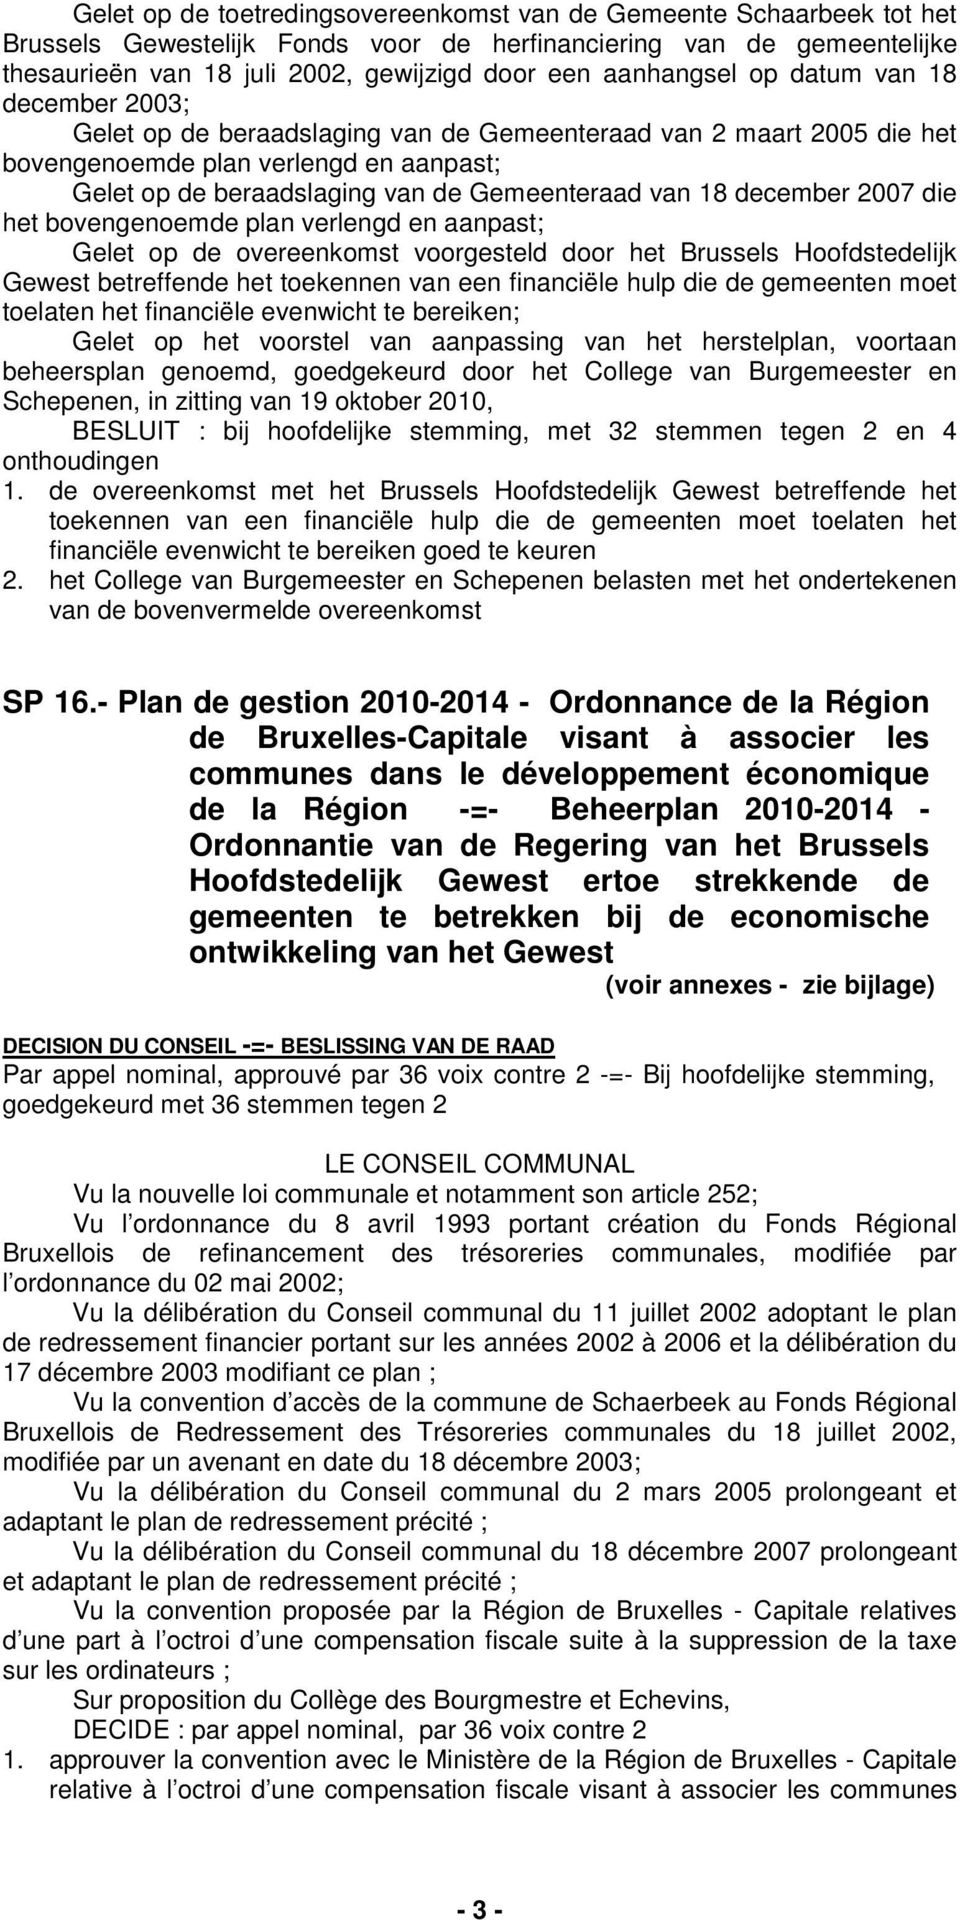 van 18 december 2007 die het bovengenoemde plan verlengd en aanpast; Gelet op de overeenkomst voorgesteld door het Brussels Hoofdstedelijk Gewest betreffende het toekennen van een financiële hulp die